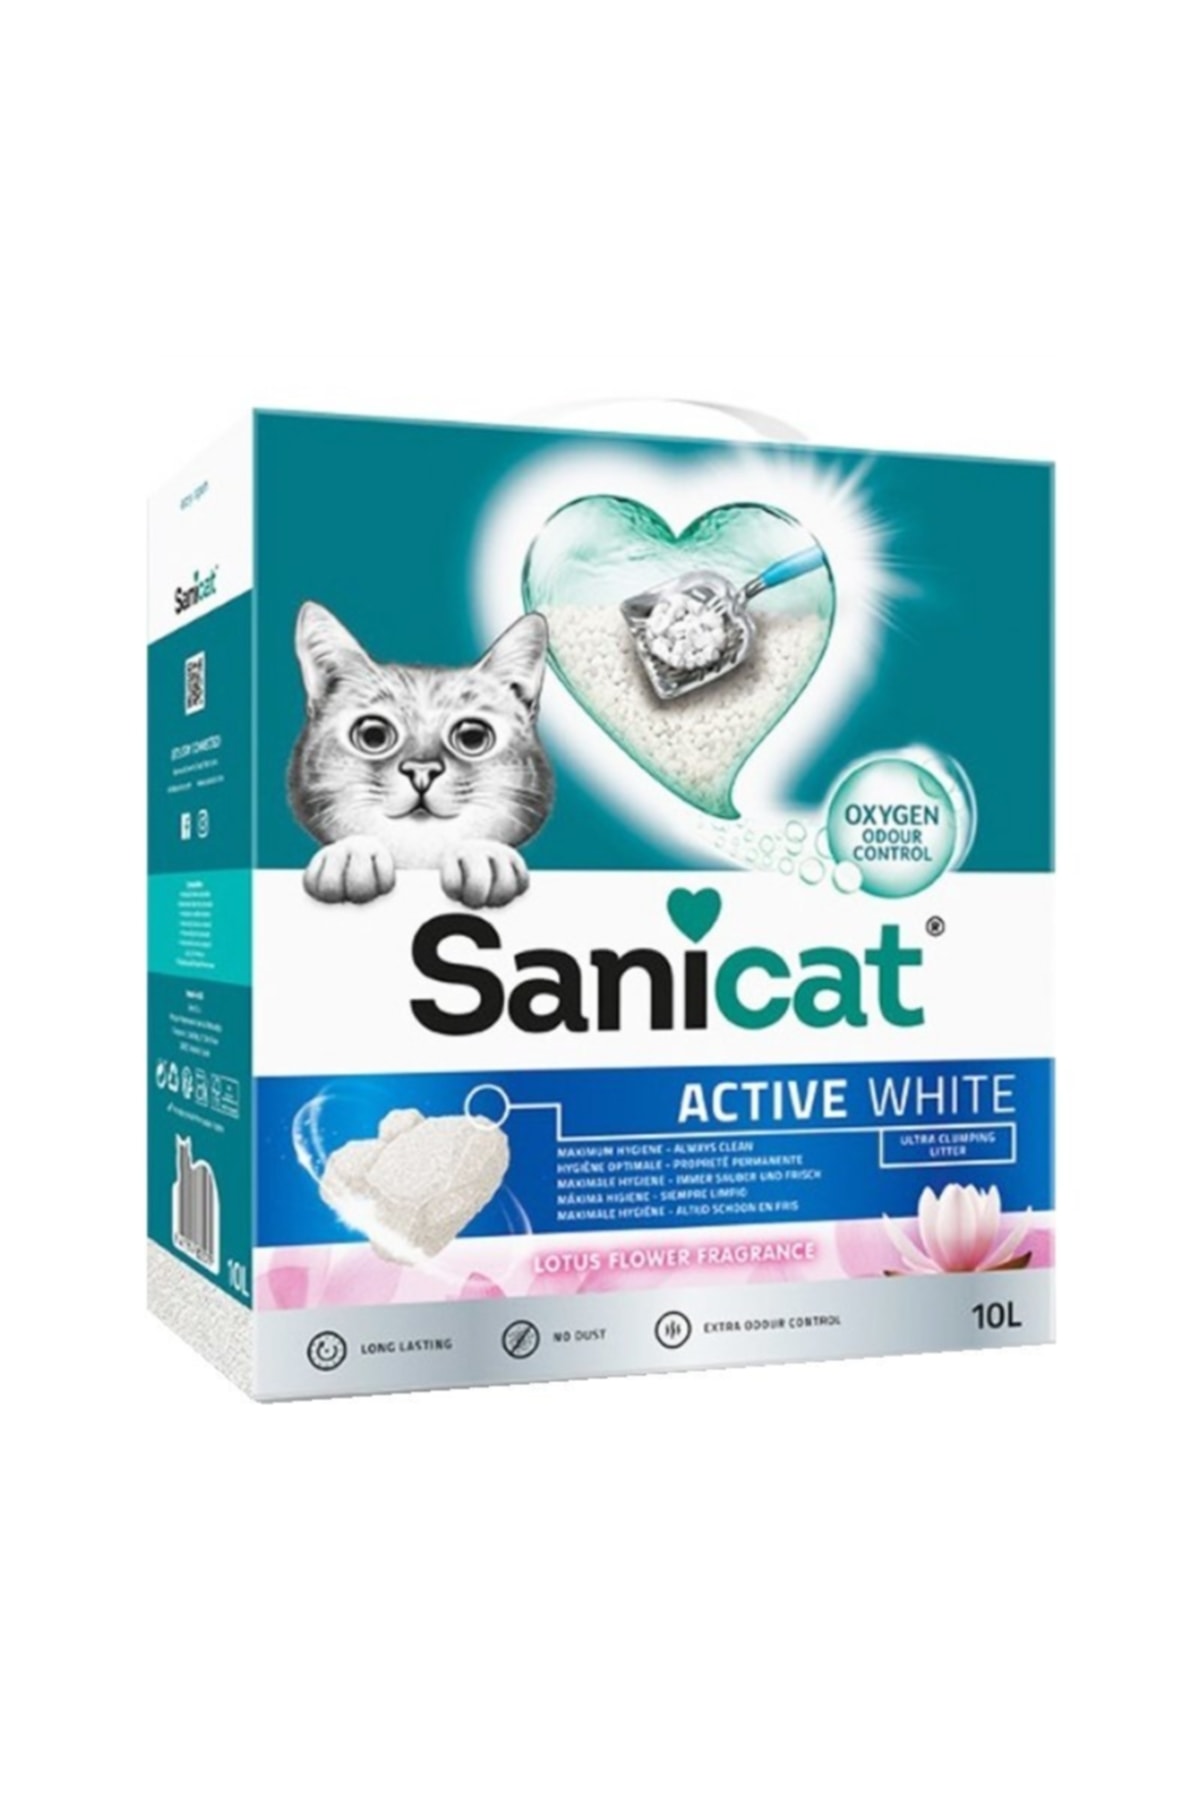 Sanicat Active White Süper Topaklanan Kedi Kumu Lotus Çiçeği Kokulu 10 Lt